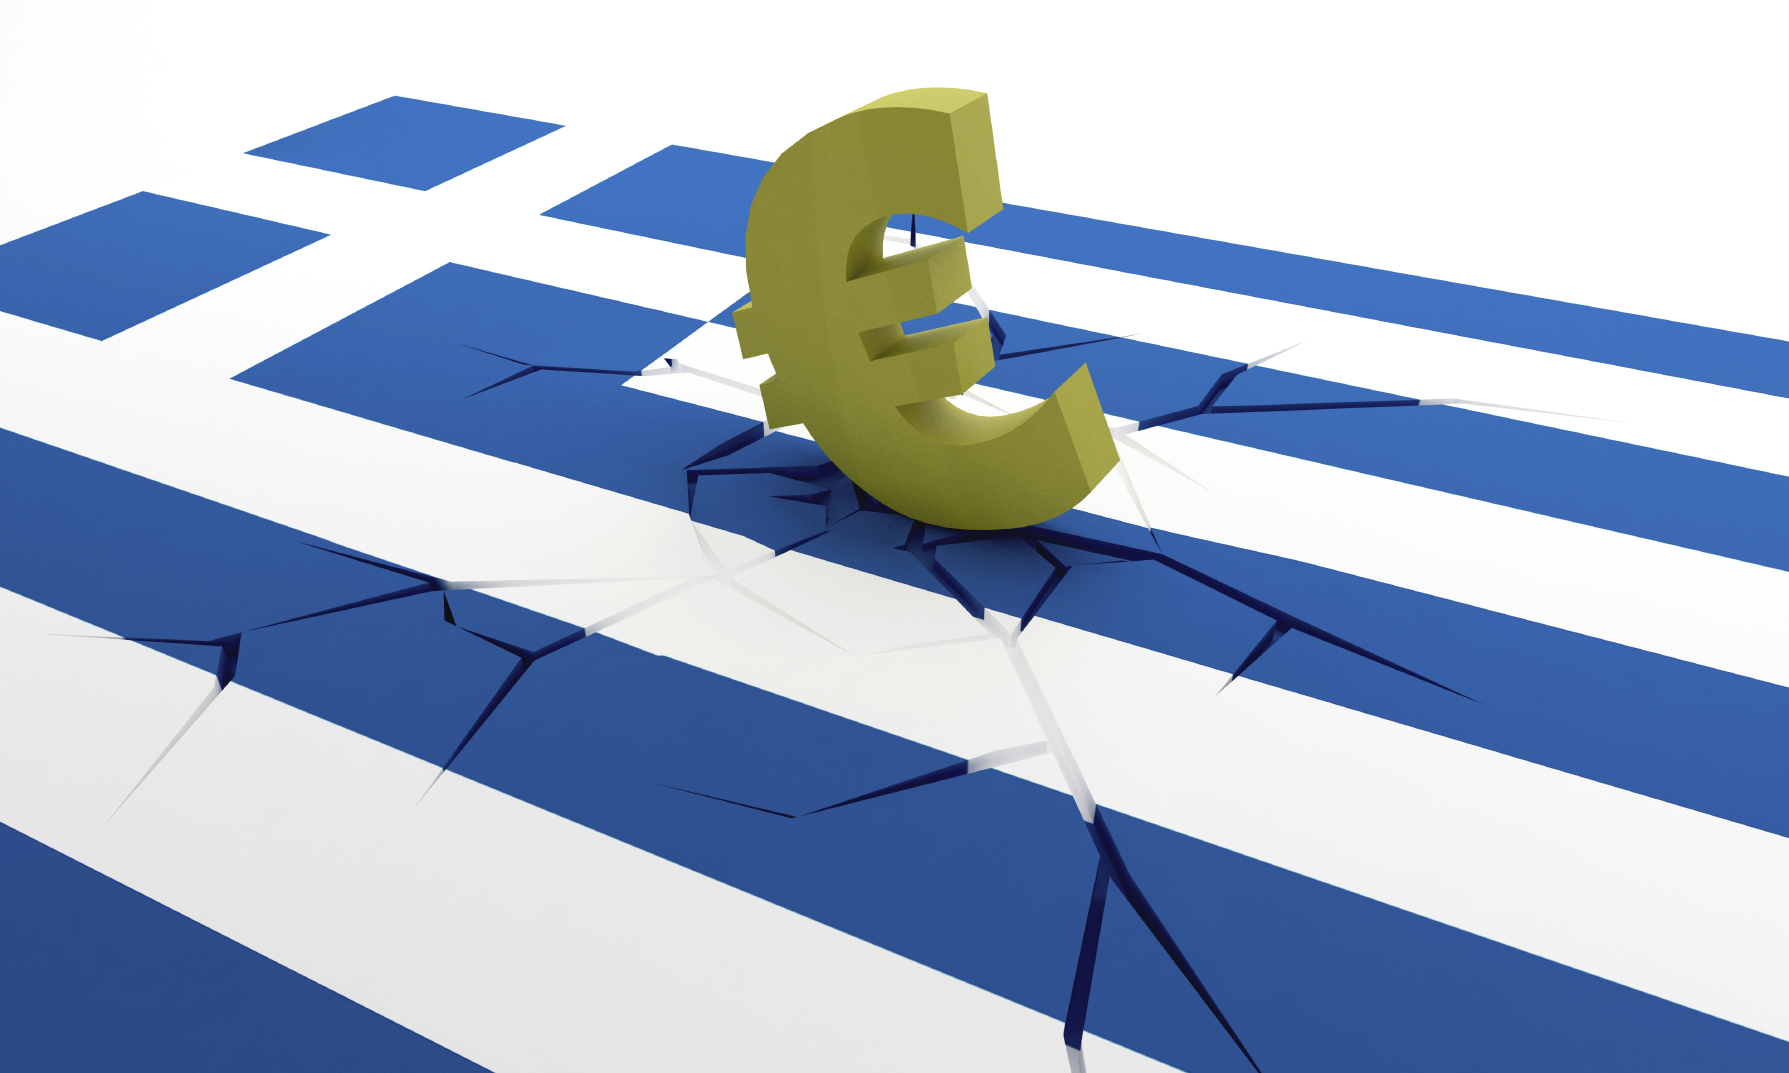 Οικονομικά κατεστραμμένη η Ελλάδα-Σύντομα εκτός ευρώ”